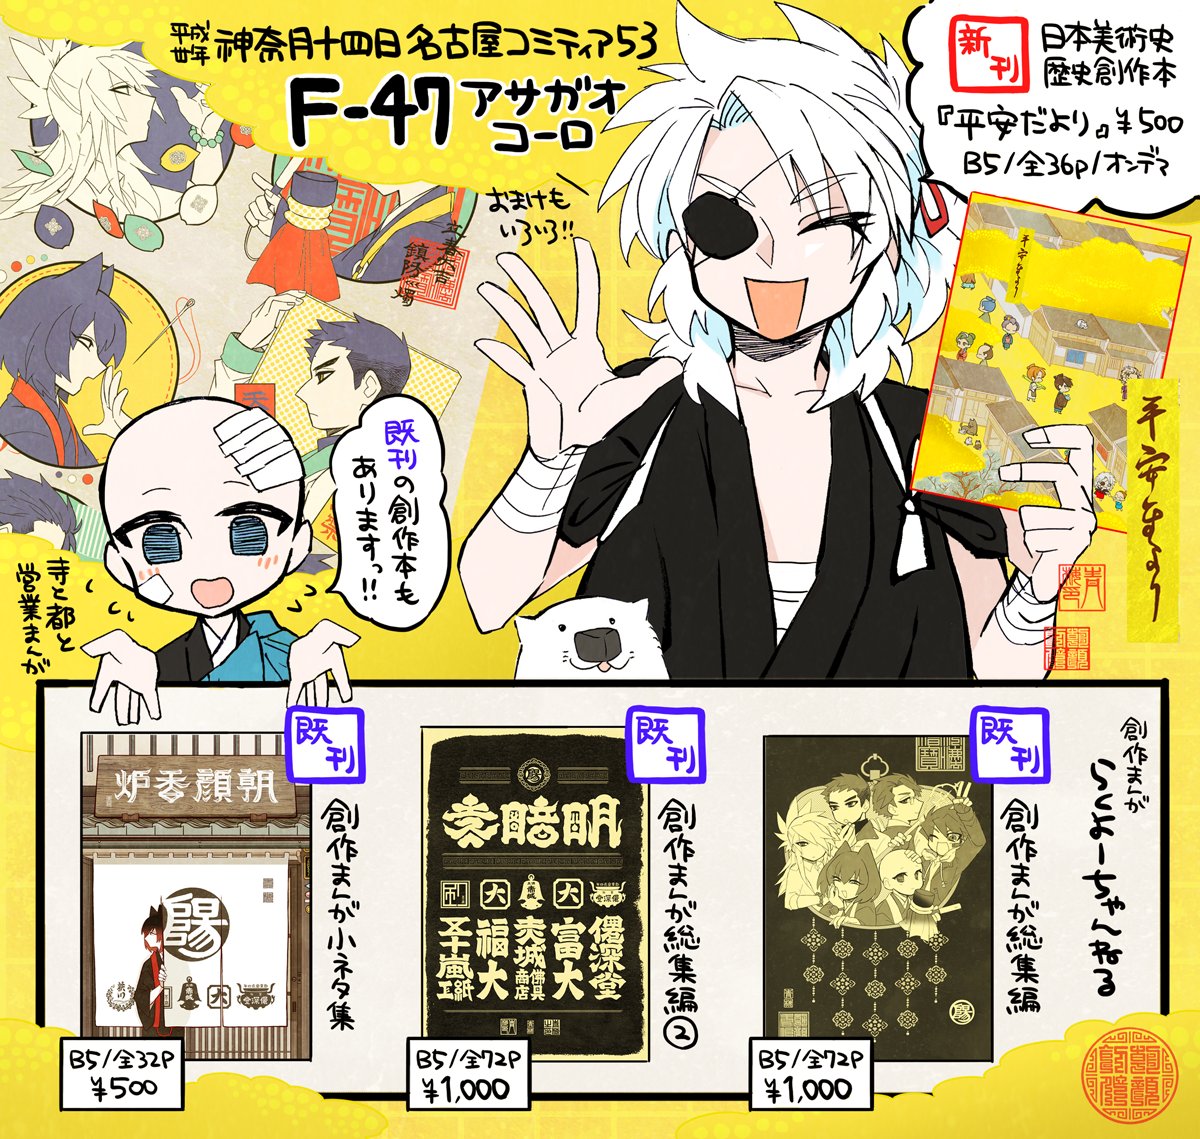 名古屋コミティア53のおしながきです😋新刊の日本美術史創作漫画と既刊の創作漫画持って行きます!よろしくお願いします
#名古屋コミティア53 #名古屋コミティア 